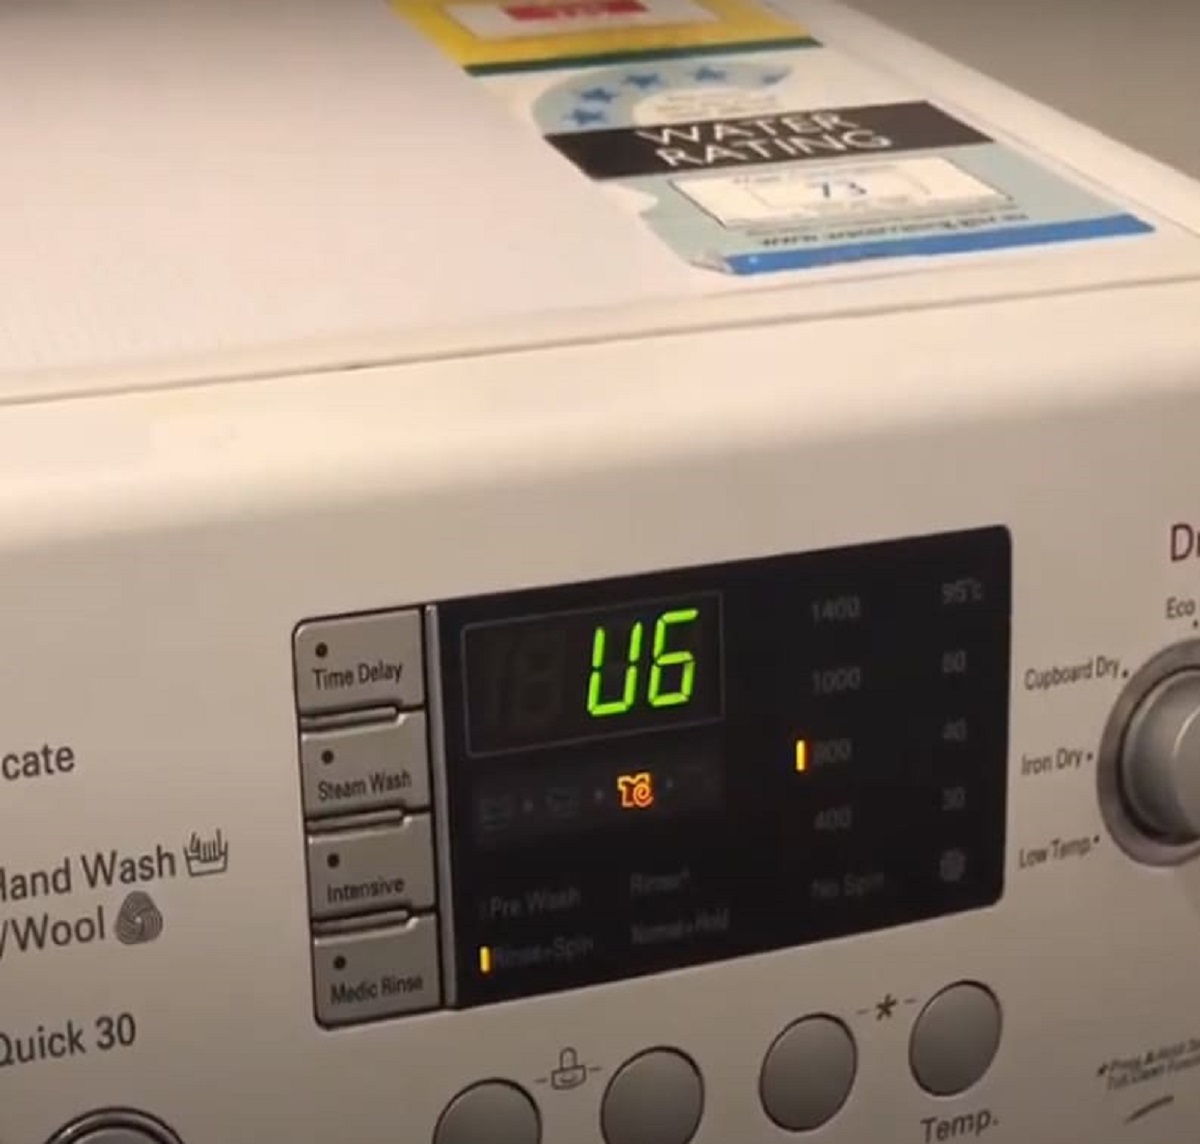 Машинка lg ue что означает. UC стиральная машина самсунг. Ошибка UC В стиральной машине Samsung. Индикаторы на панели стиральной машины самсунг эко бабл. Ошибки стиральной машины самсунг эко бабл 6.